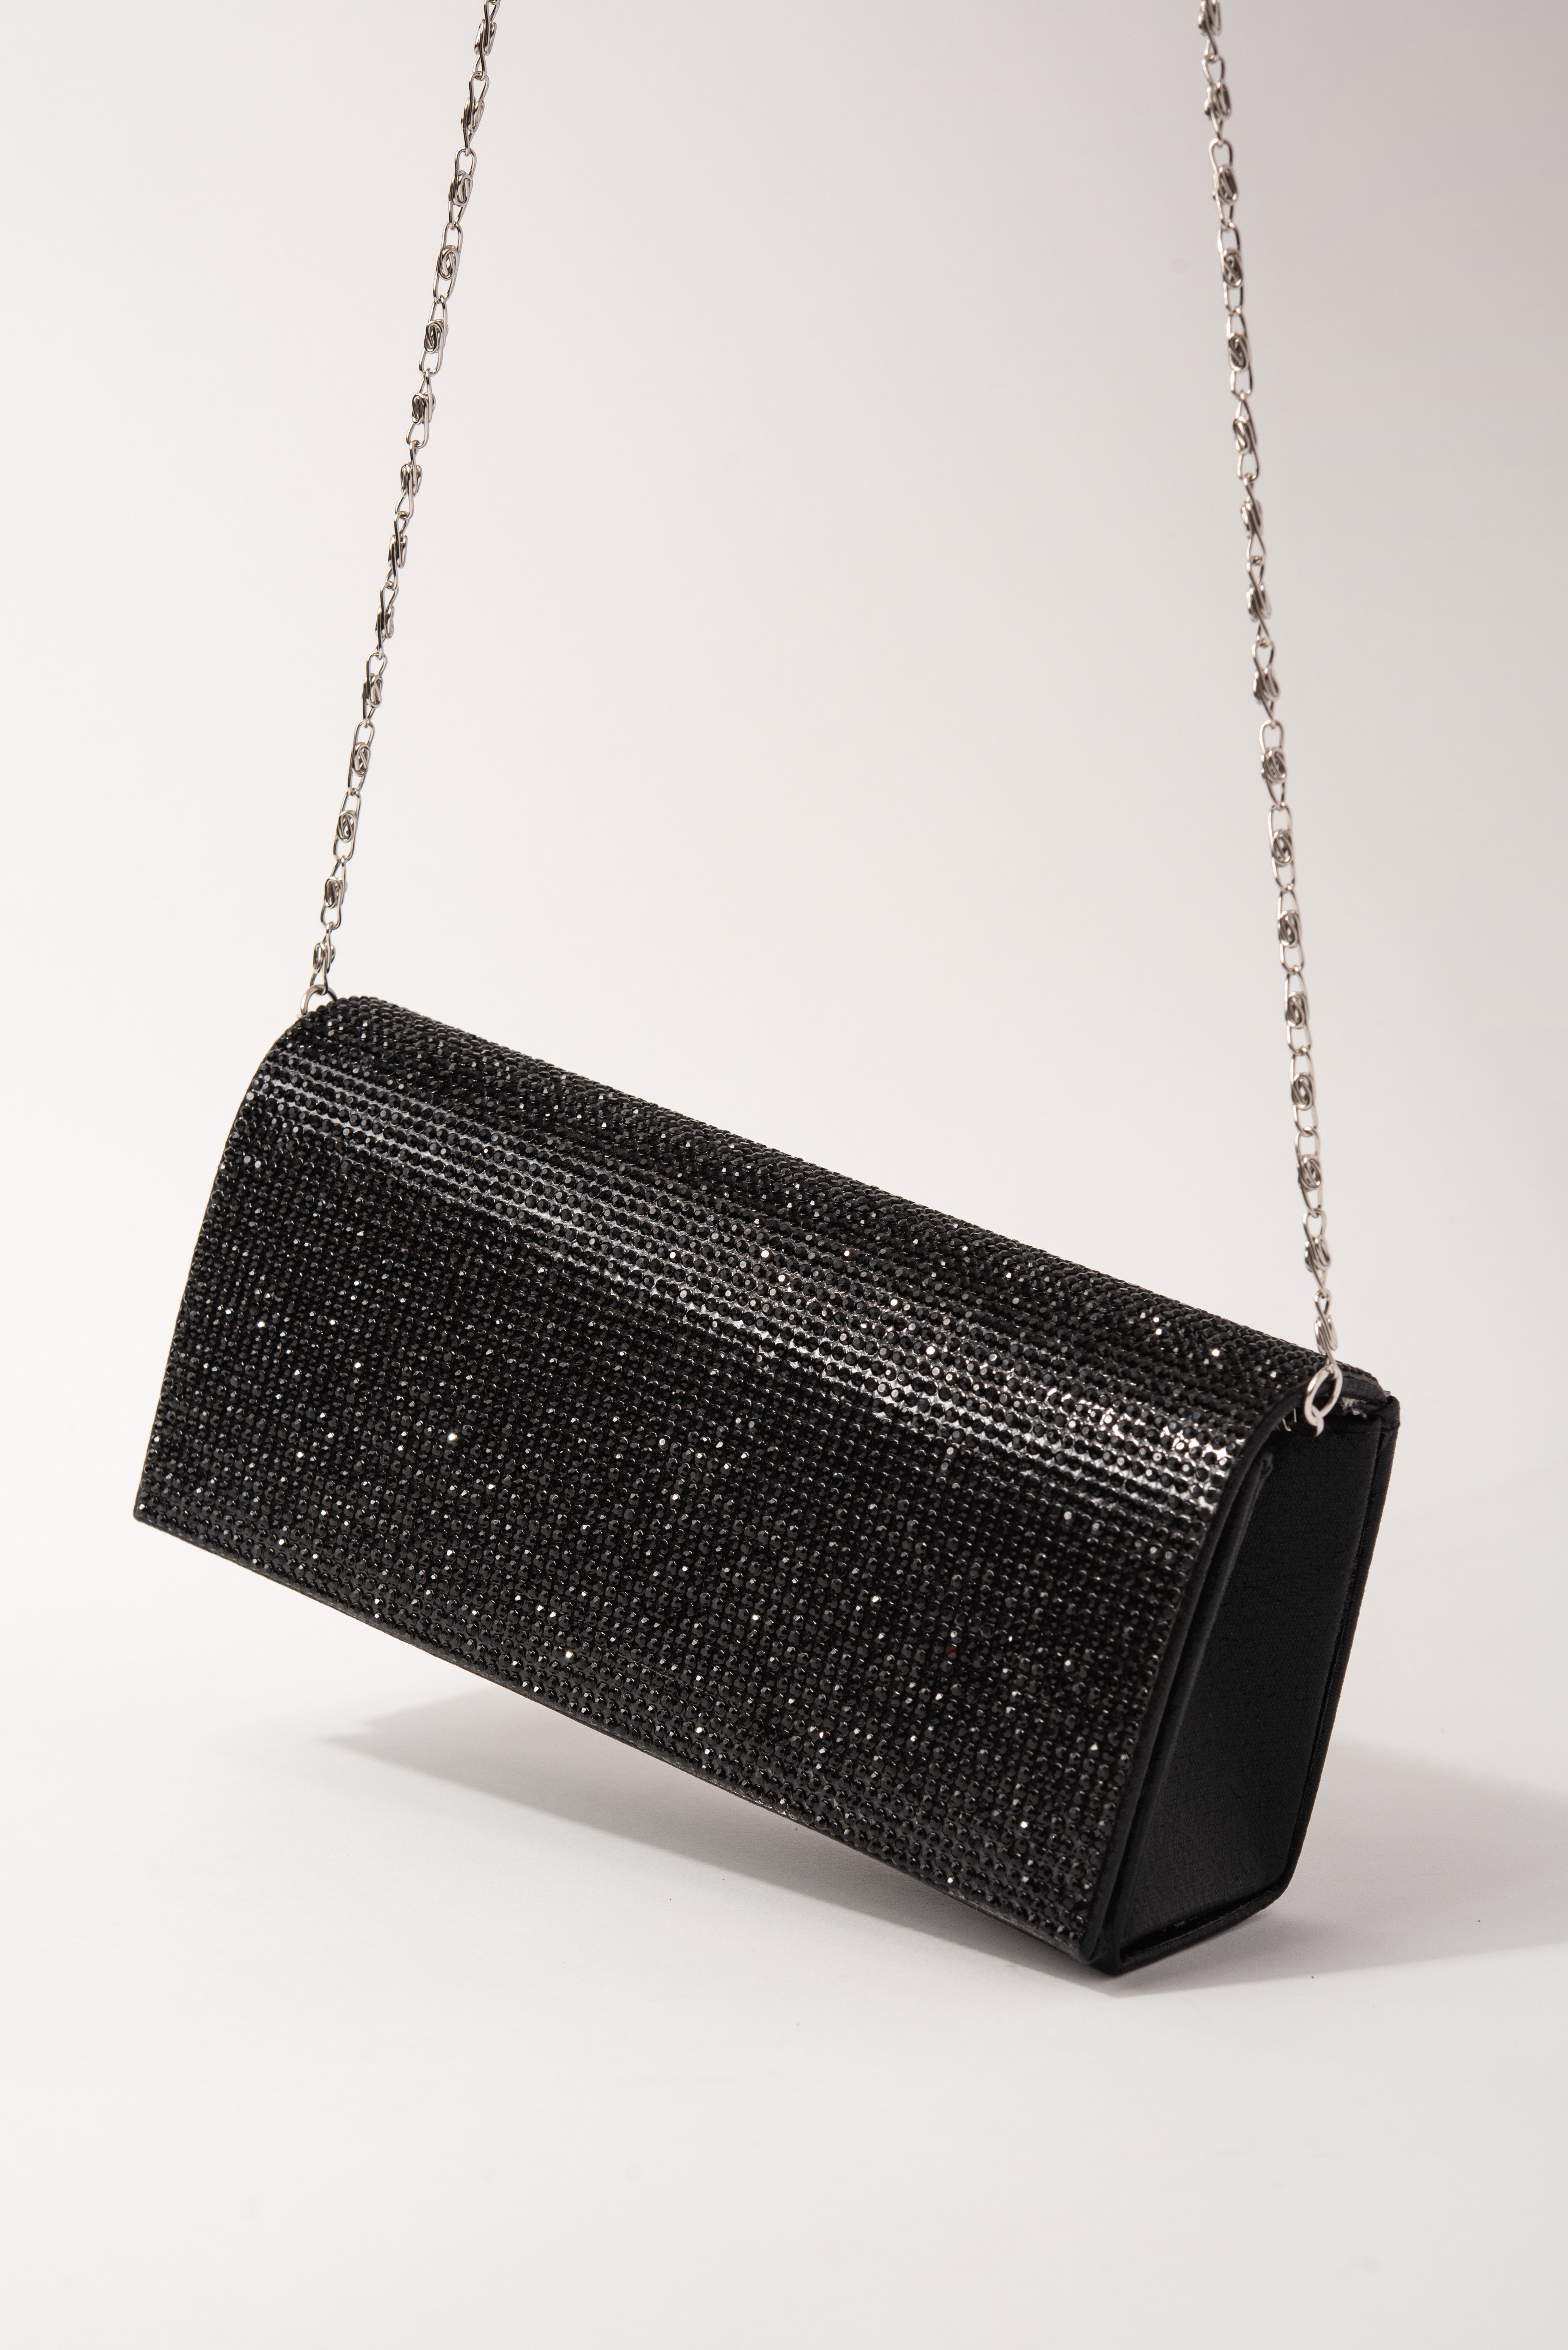 Dexmay Shiny Evening Bag for Wedding Party Elegant Crystal Rhinestone  Clutch Purse Black : Amazon.in: फैशन